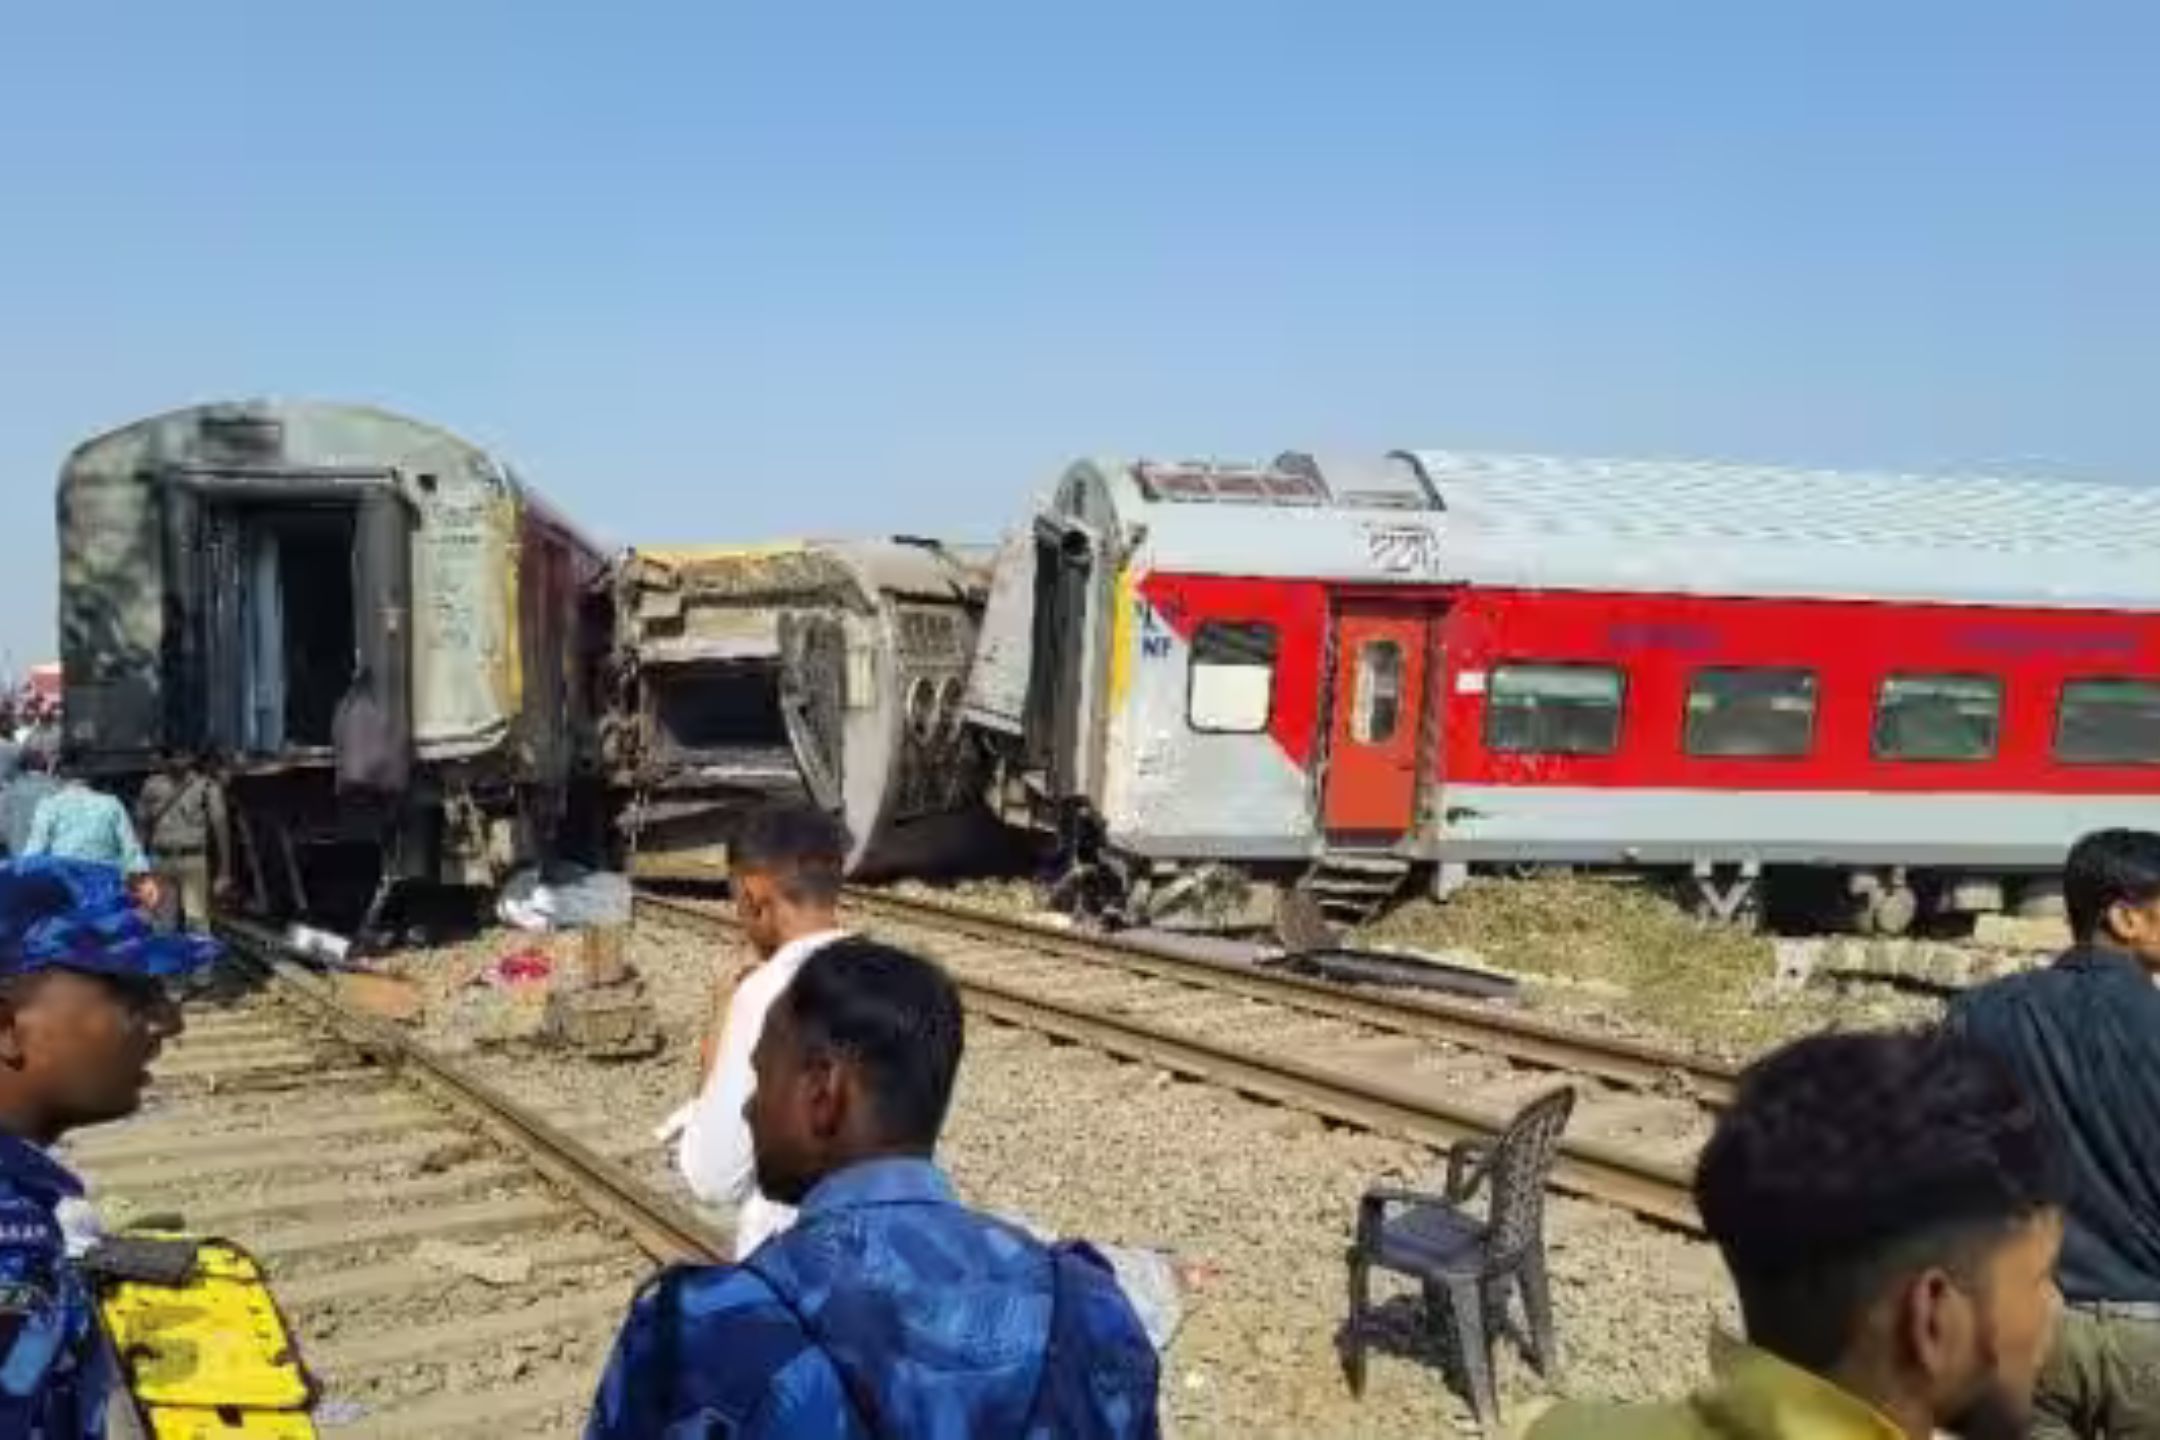 直击摩洛哥火车脱轨事故现场 已导致10人丧生90人受伤|火车脱轨|摩洛哥|事故现场_新浪新闻